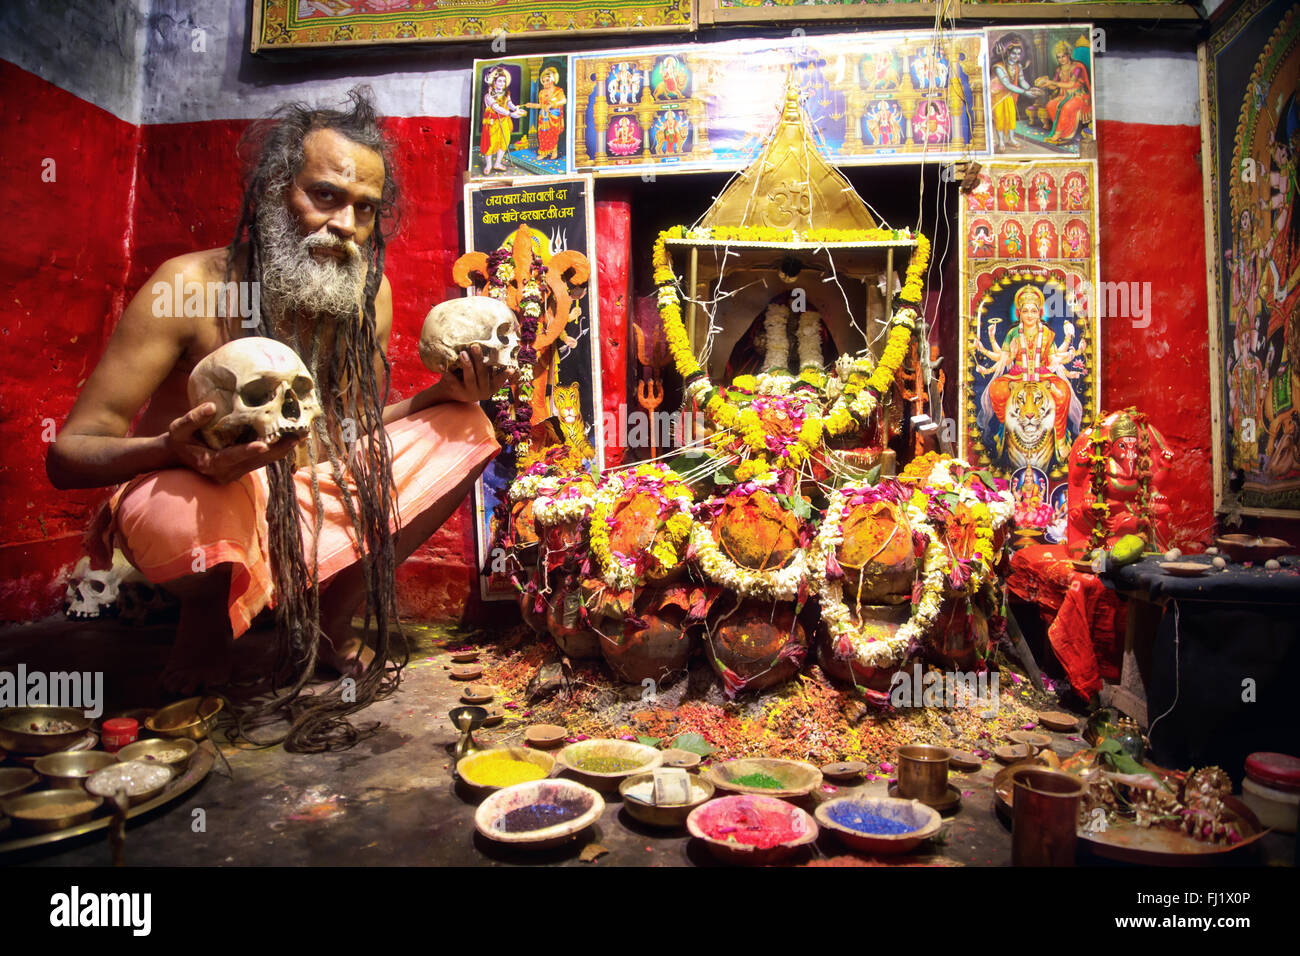 Portrait von Aghori cannibal Sadhu heiligen Mann vor dekoriert Tempel in Varanasi, Indien Stockfoto